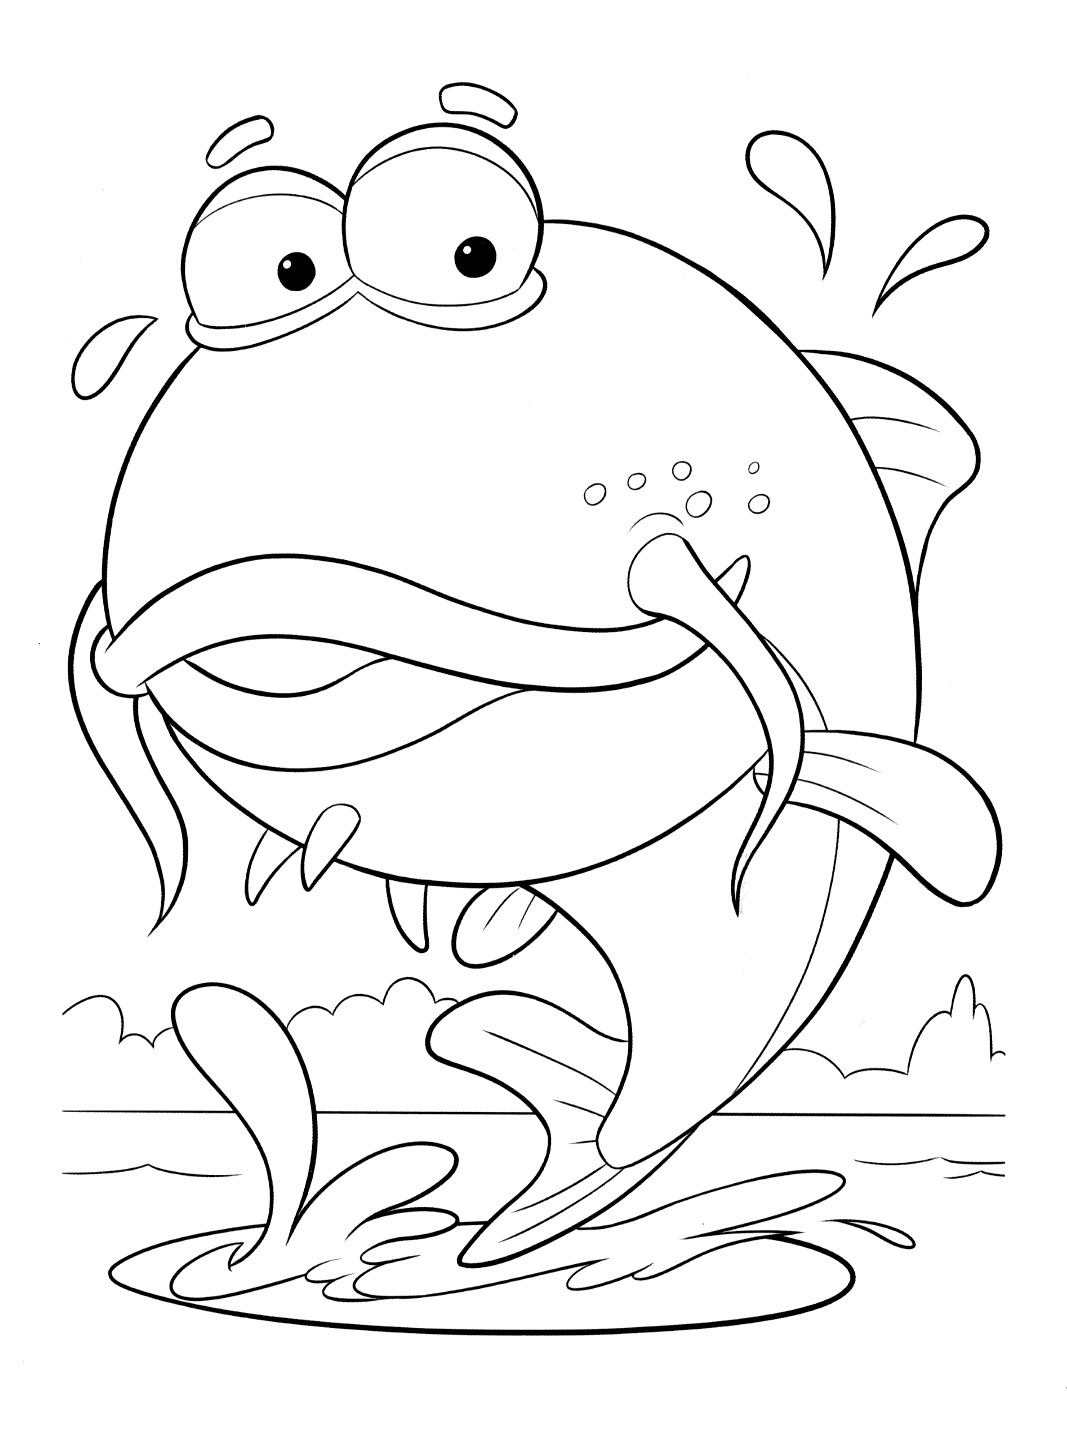 Coloring page - Big fish